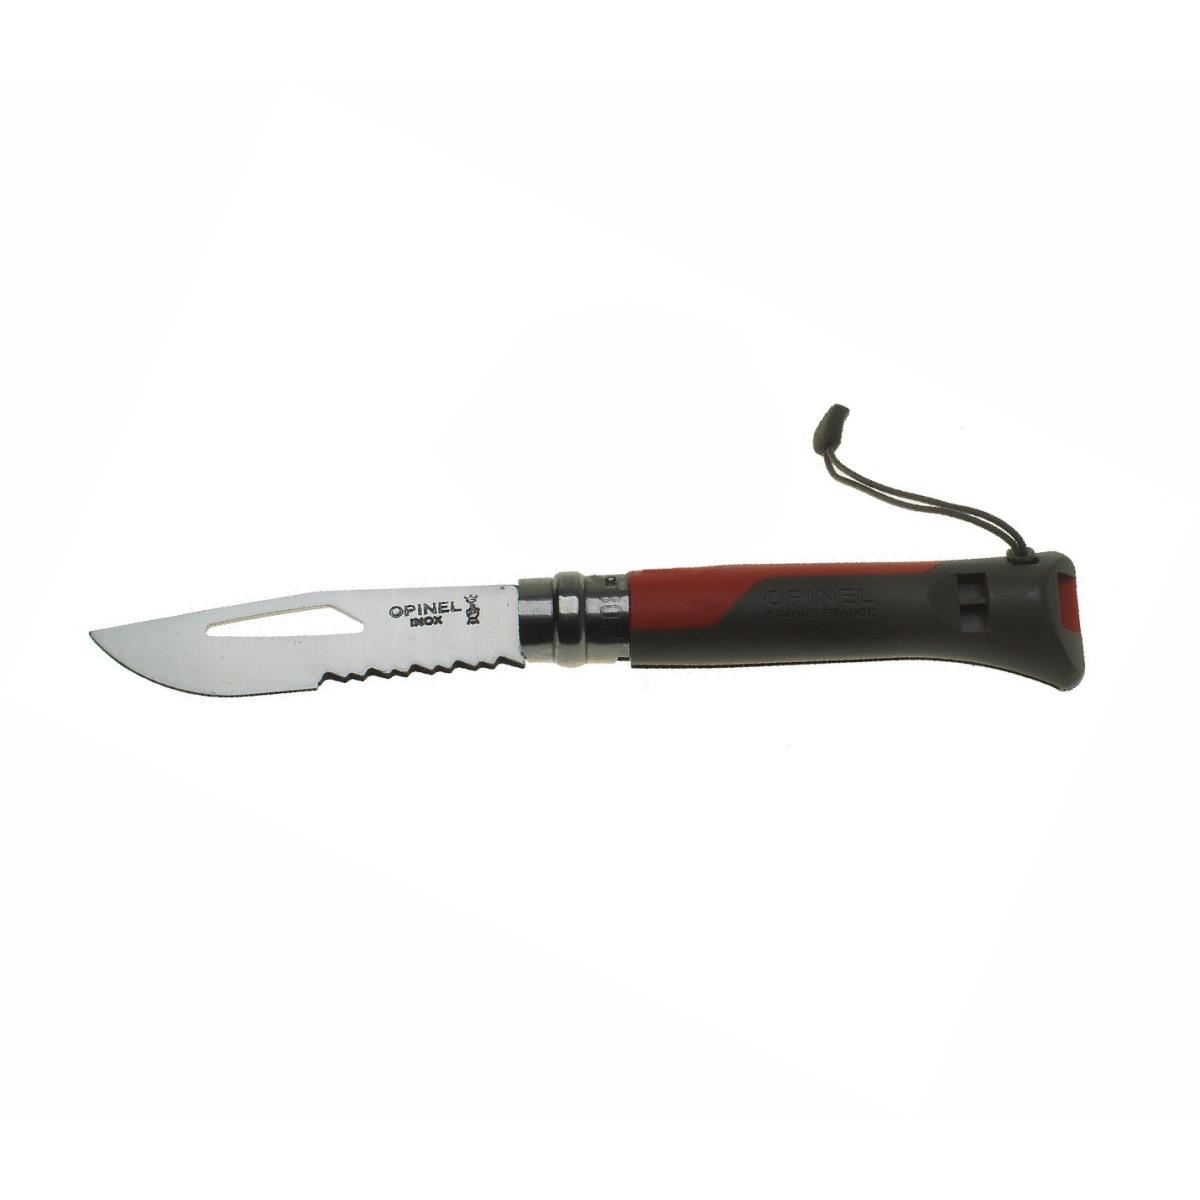 Нож Opinel 8 VRI Outdoor knife двухцветная пластик. рукоять (красная), свисток, вставка для темляка набор украшений пластик 10 шт